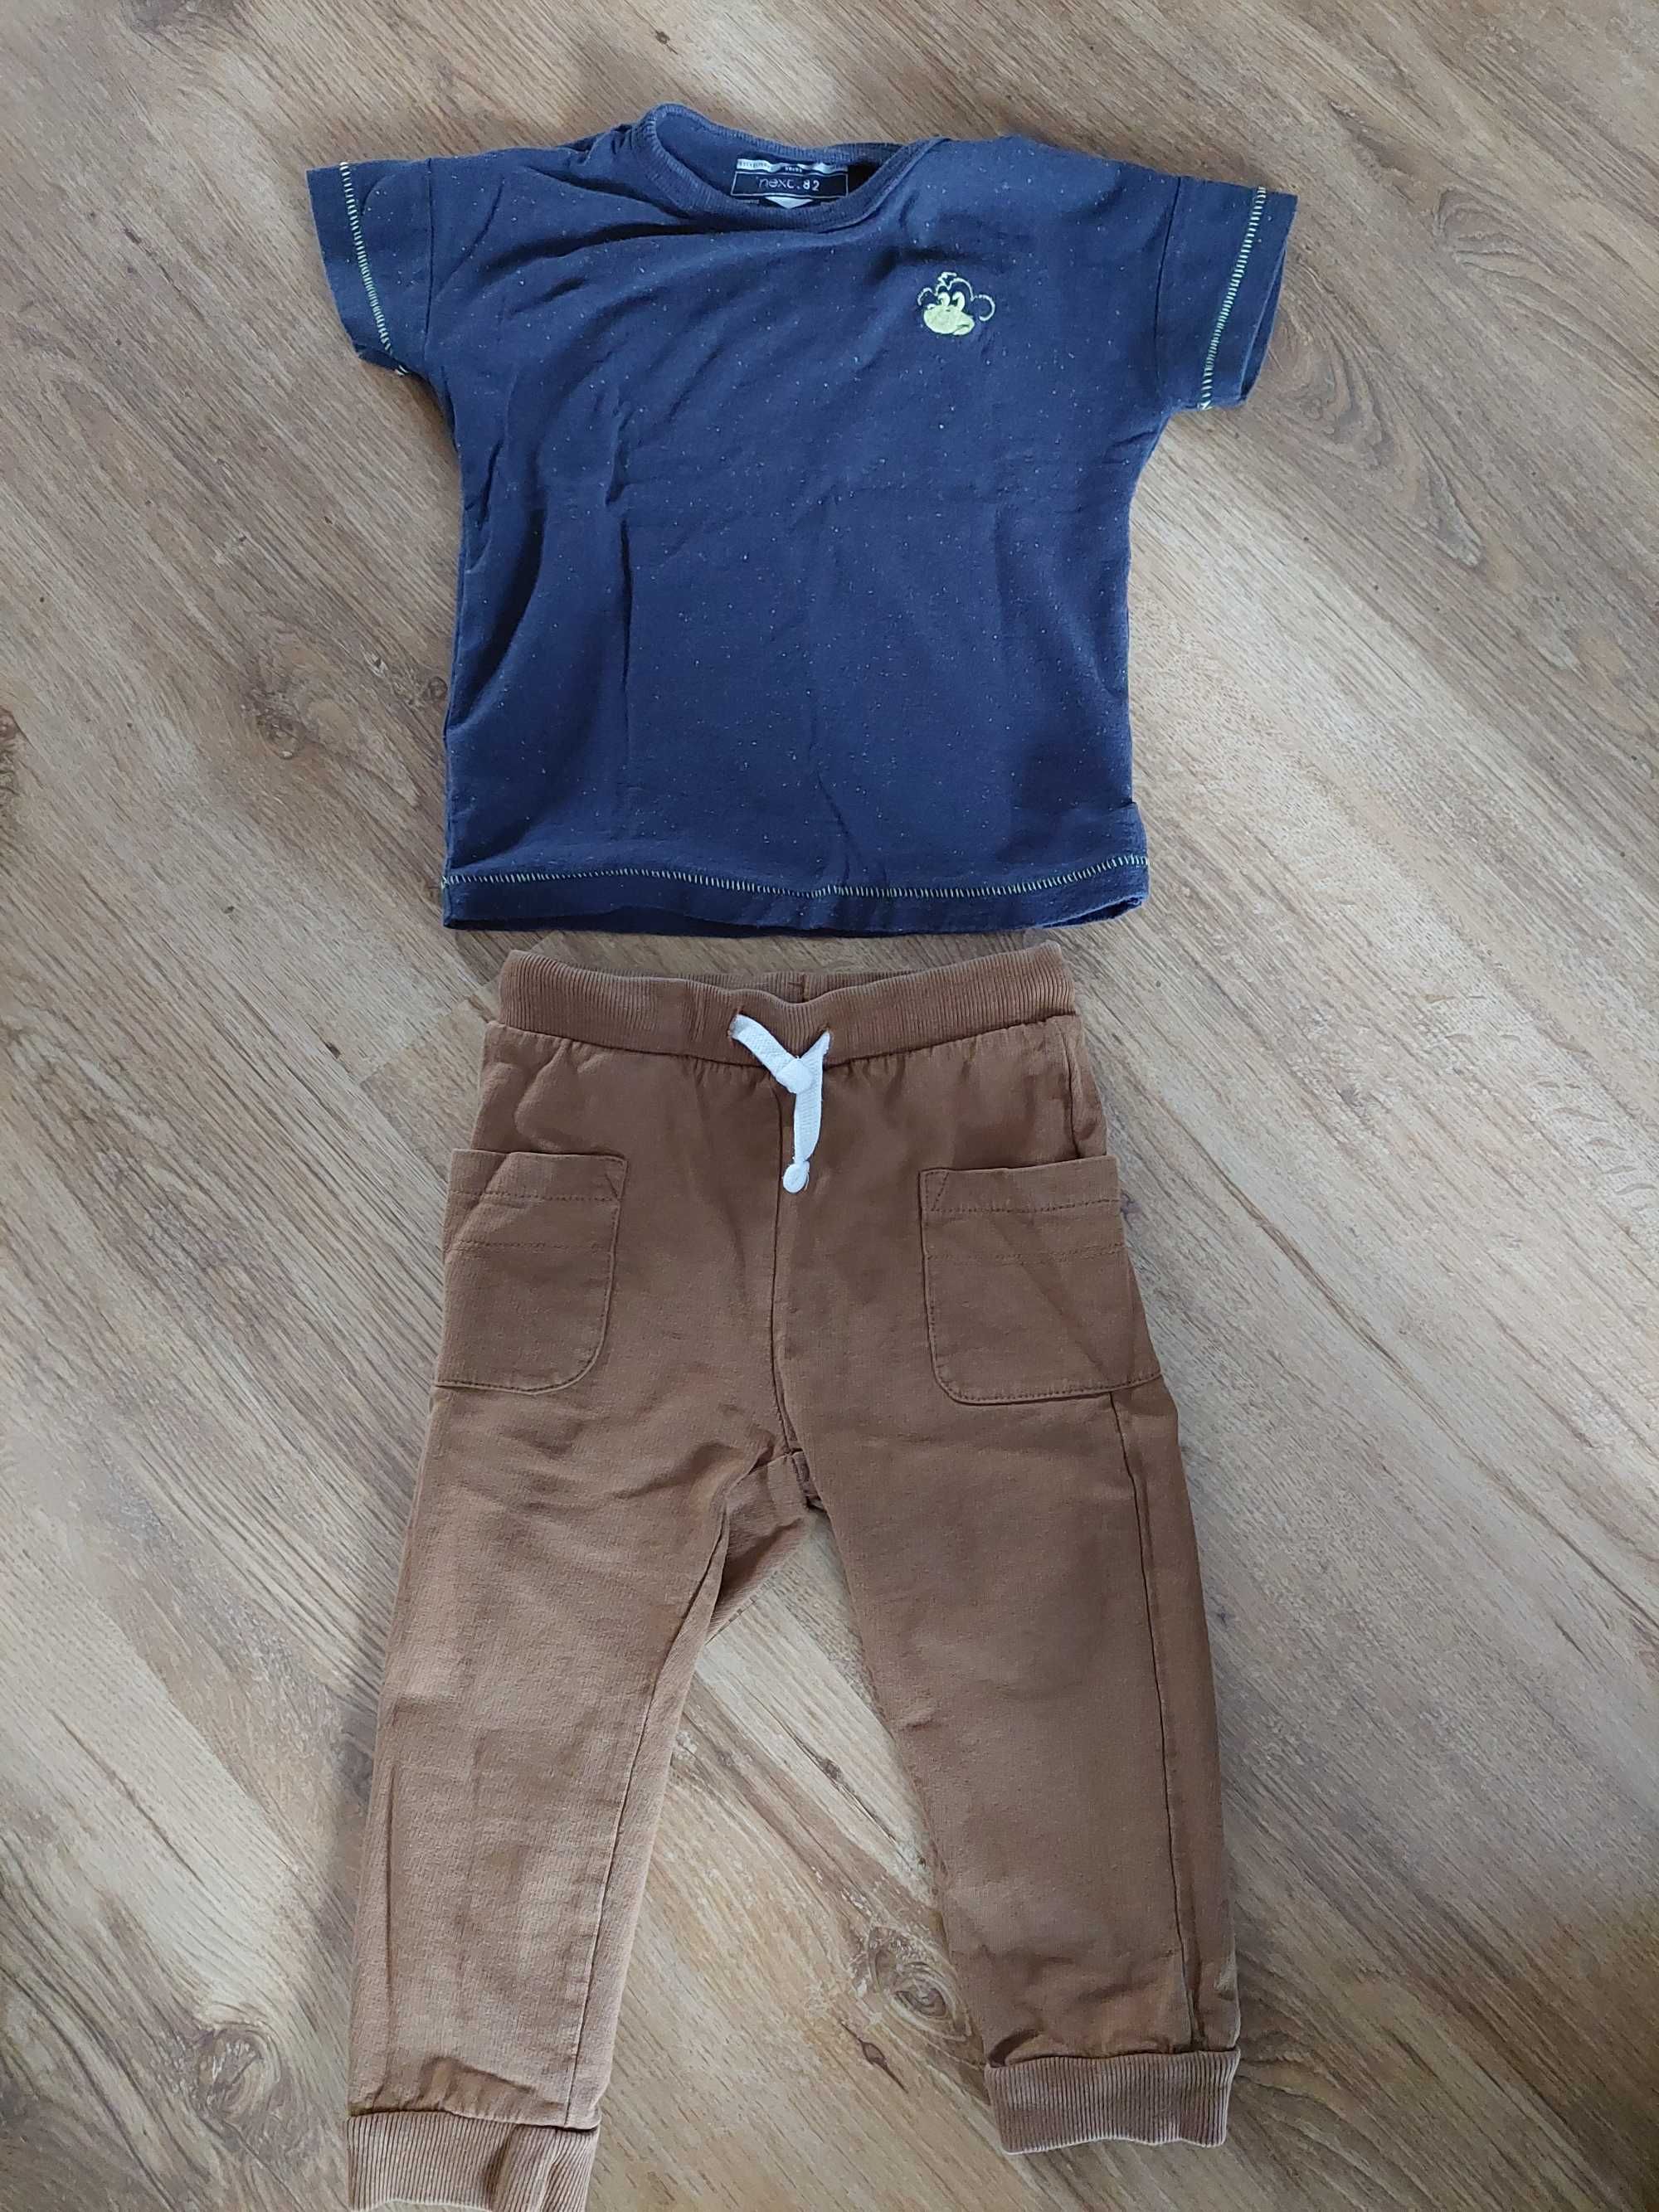 Zestaw dla chłopca koszulka plus spodnie 92cm 1,5-2latka